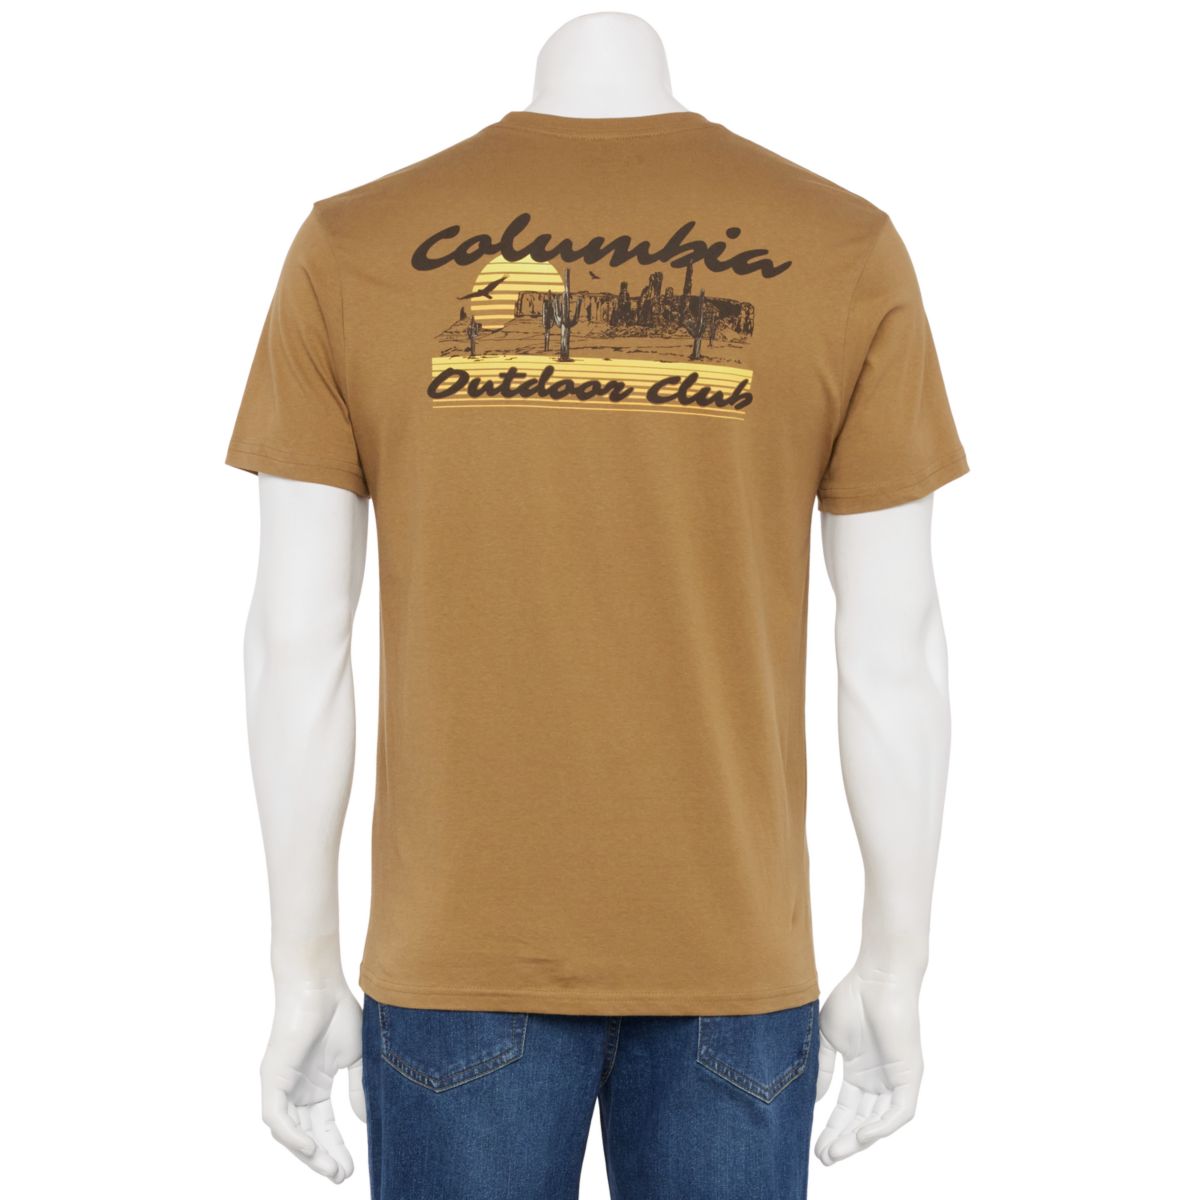 Мужская футболка Columbia с короткими рукавами и рисунком Columbia